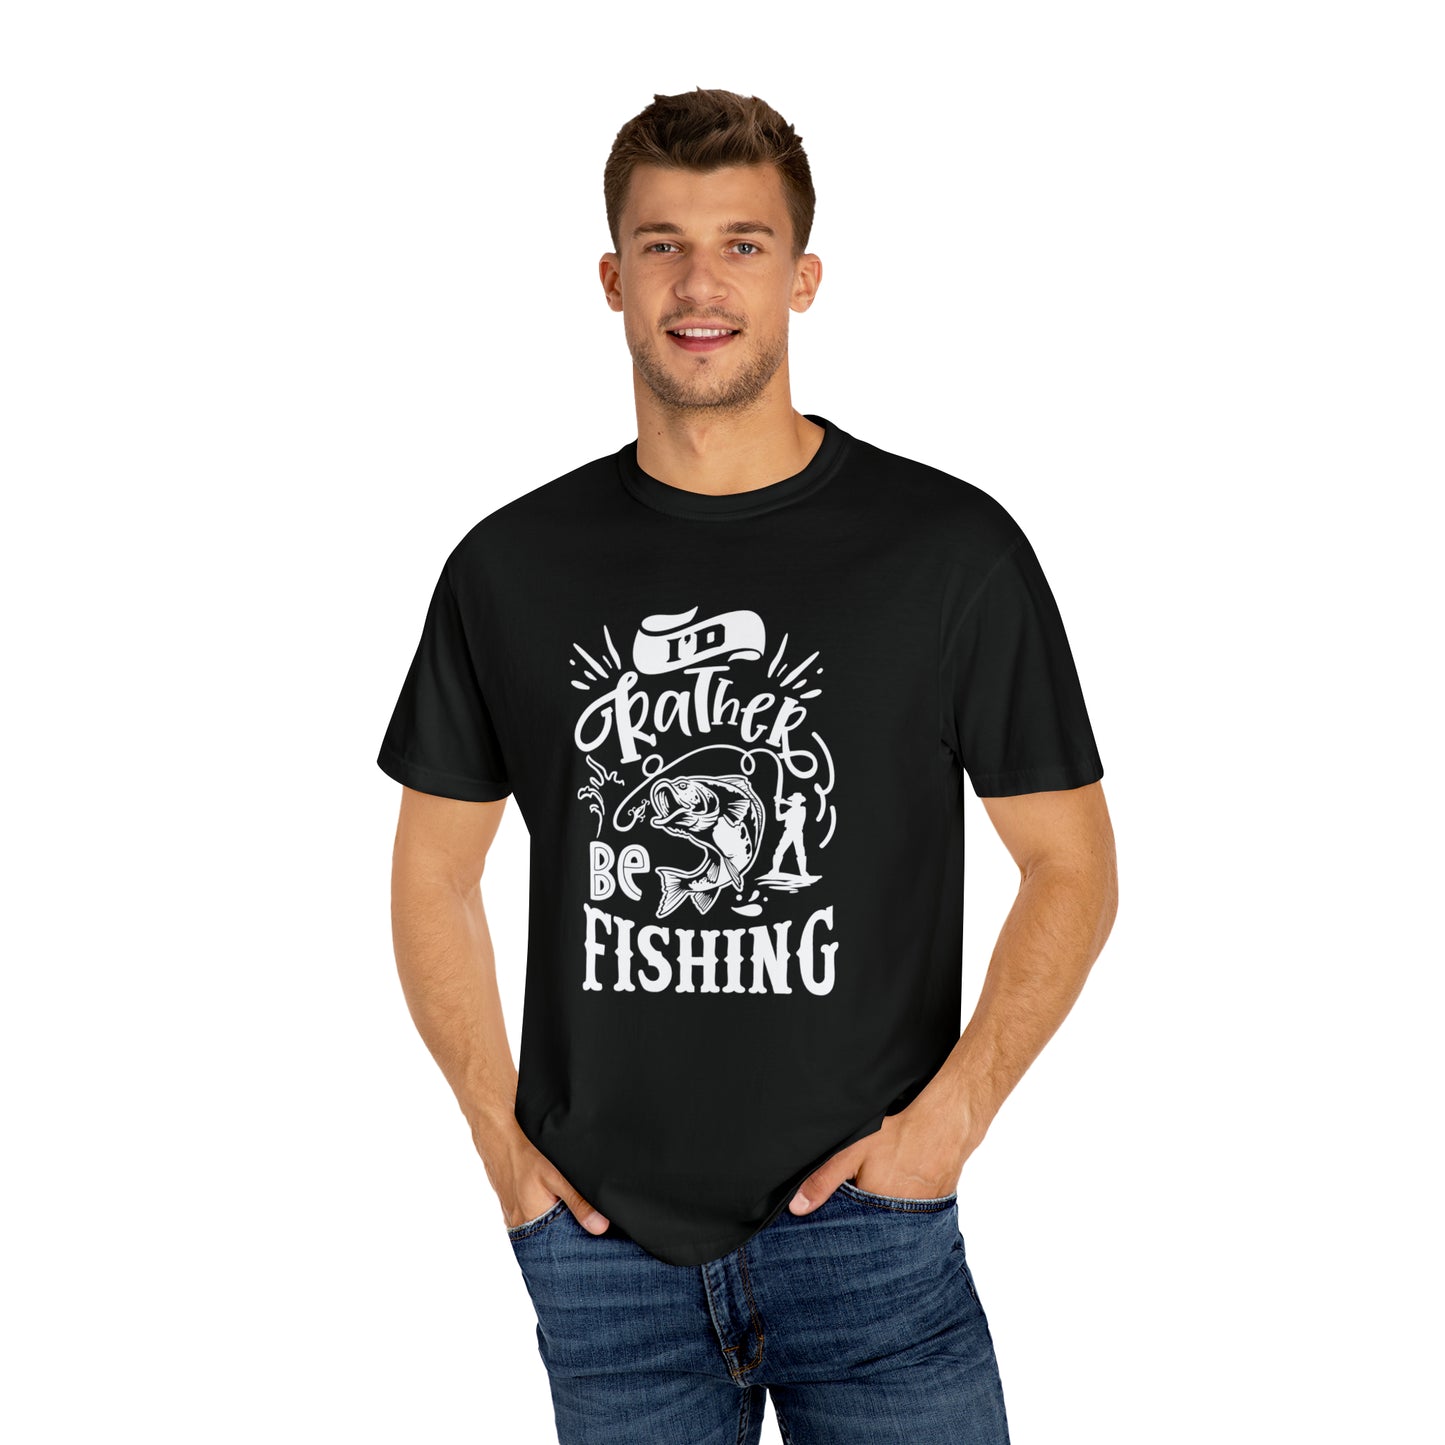 Abraza tu pasión: camiseta 'Preferiría estar pescando'